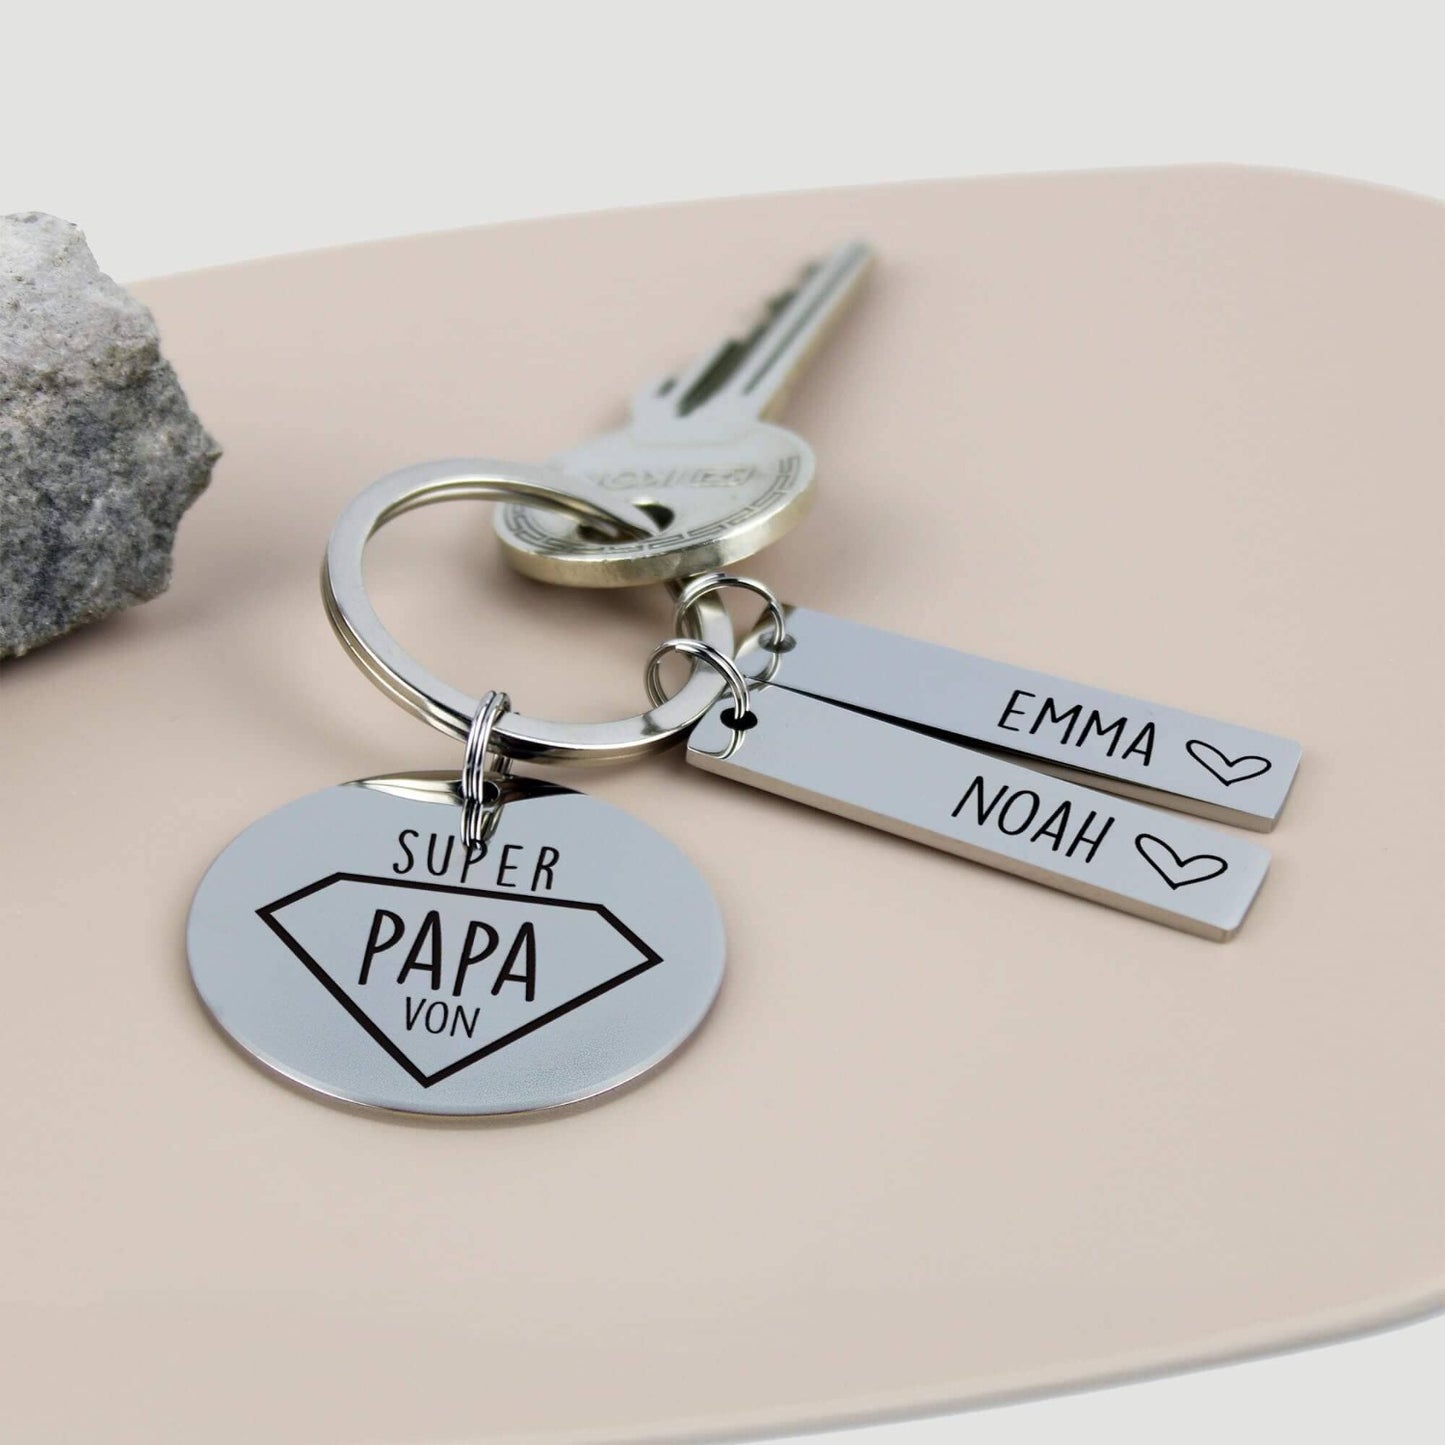 Super Papa - Schlüsselanhänger personalisiert - Create4me